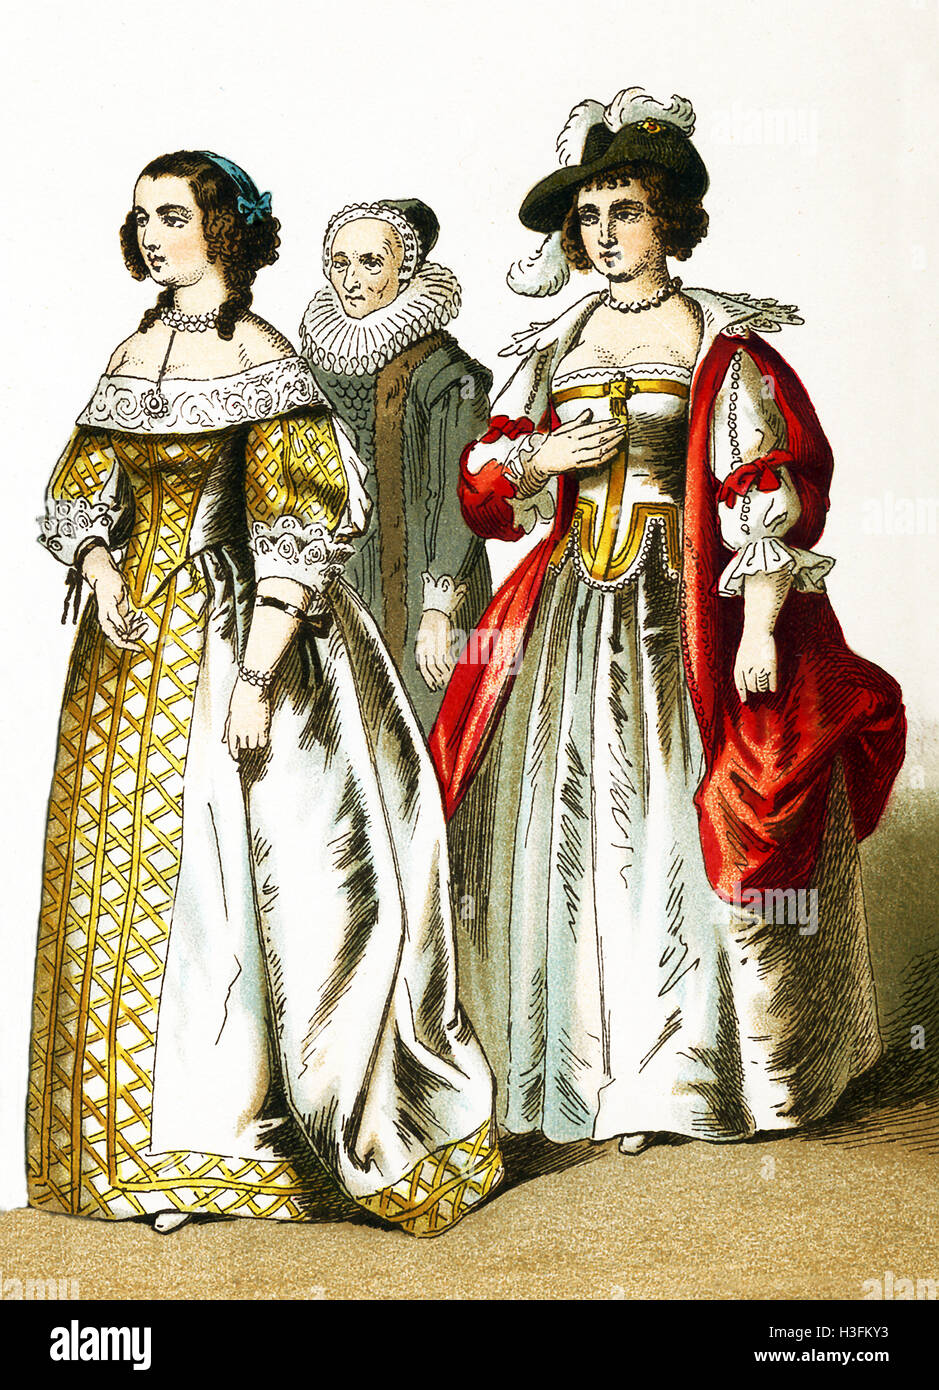 Le figure qui illustrate sono donne di varie classi nei Paesi Bassi nel 1600. L'illustrazione risale al 1882. Foto Stock